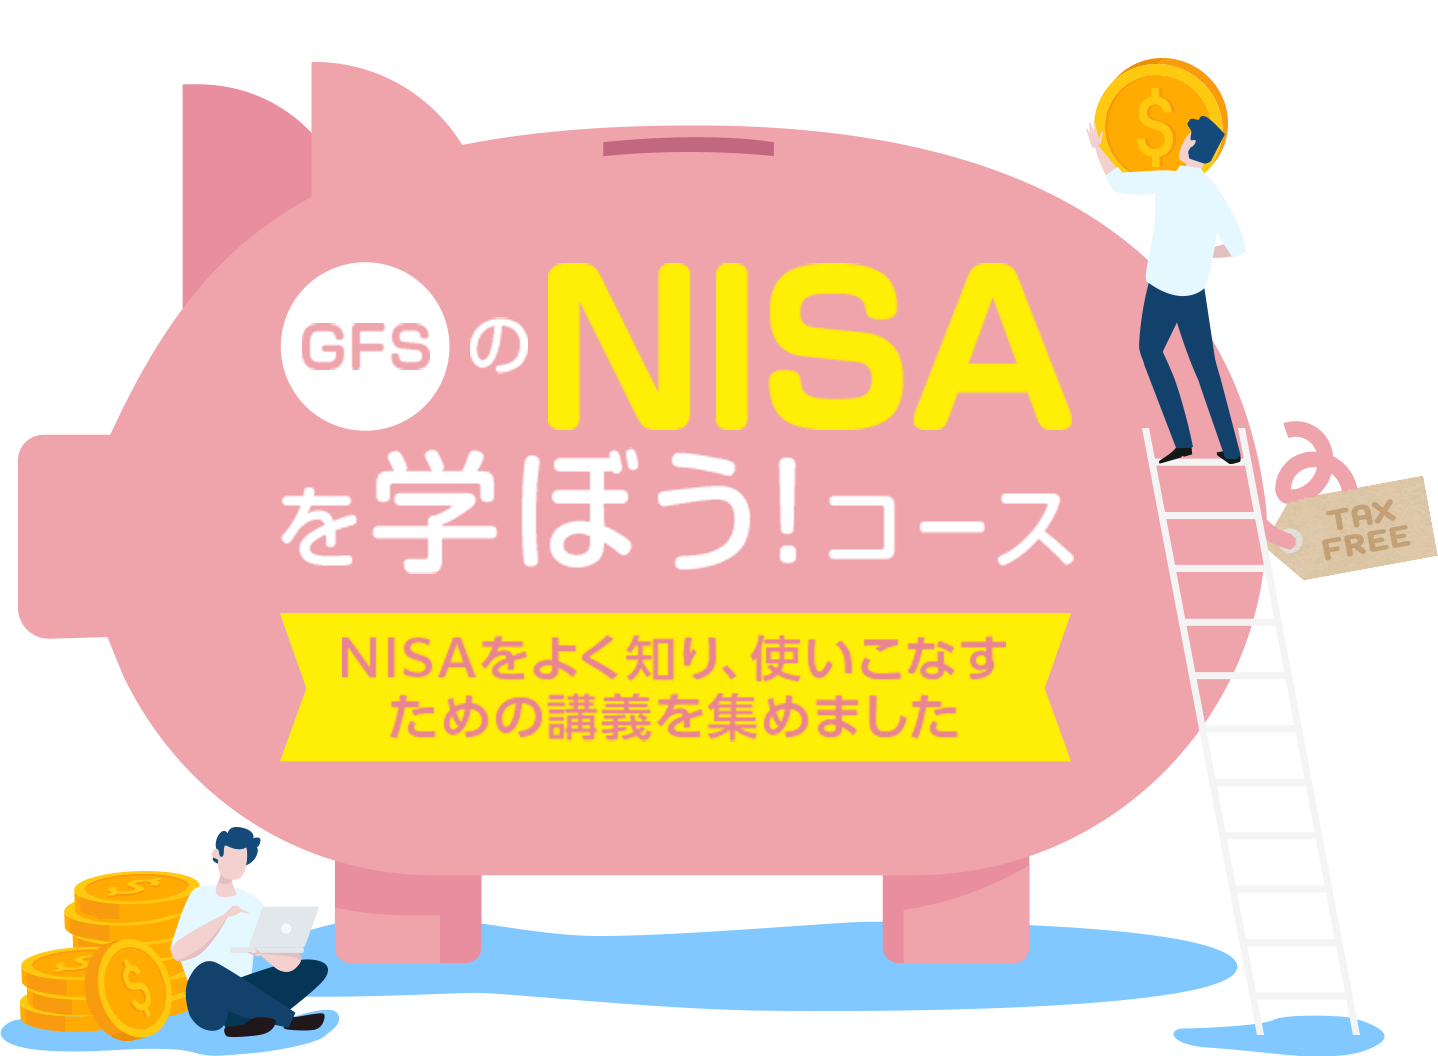 GFSのNISAを学ぼう!コース NISAをよく知り、使いこなすための講義を集めました